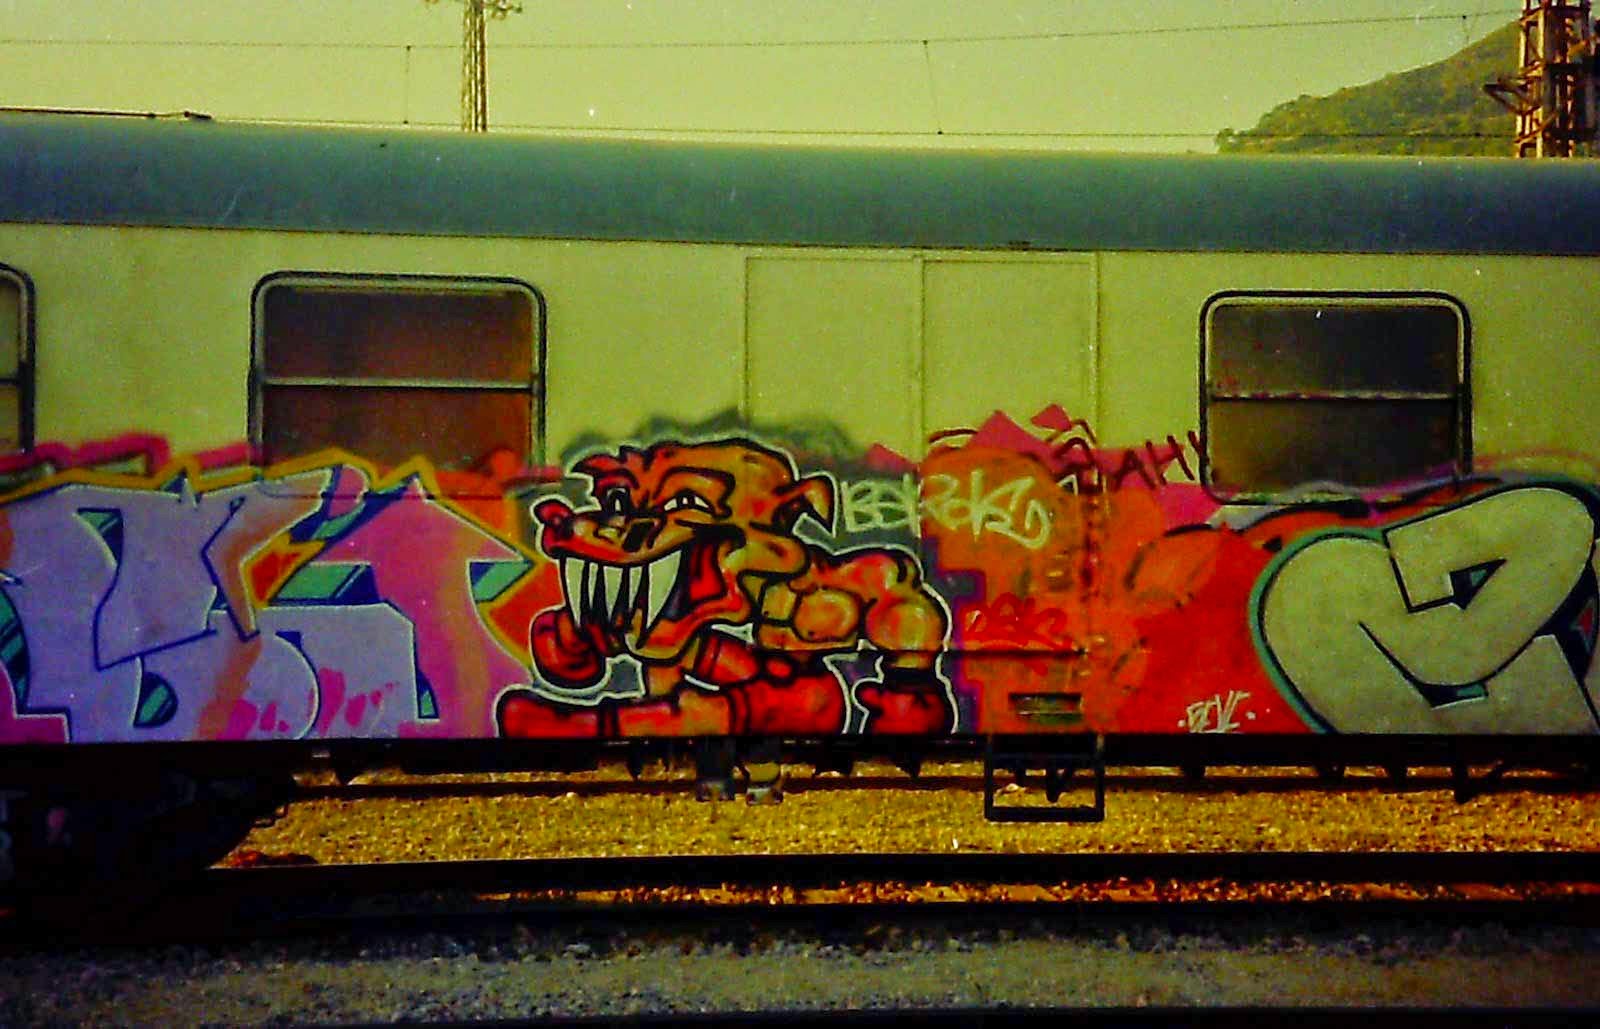 Graffiti Barcelona trenes vieja escuela